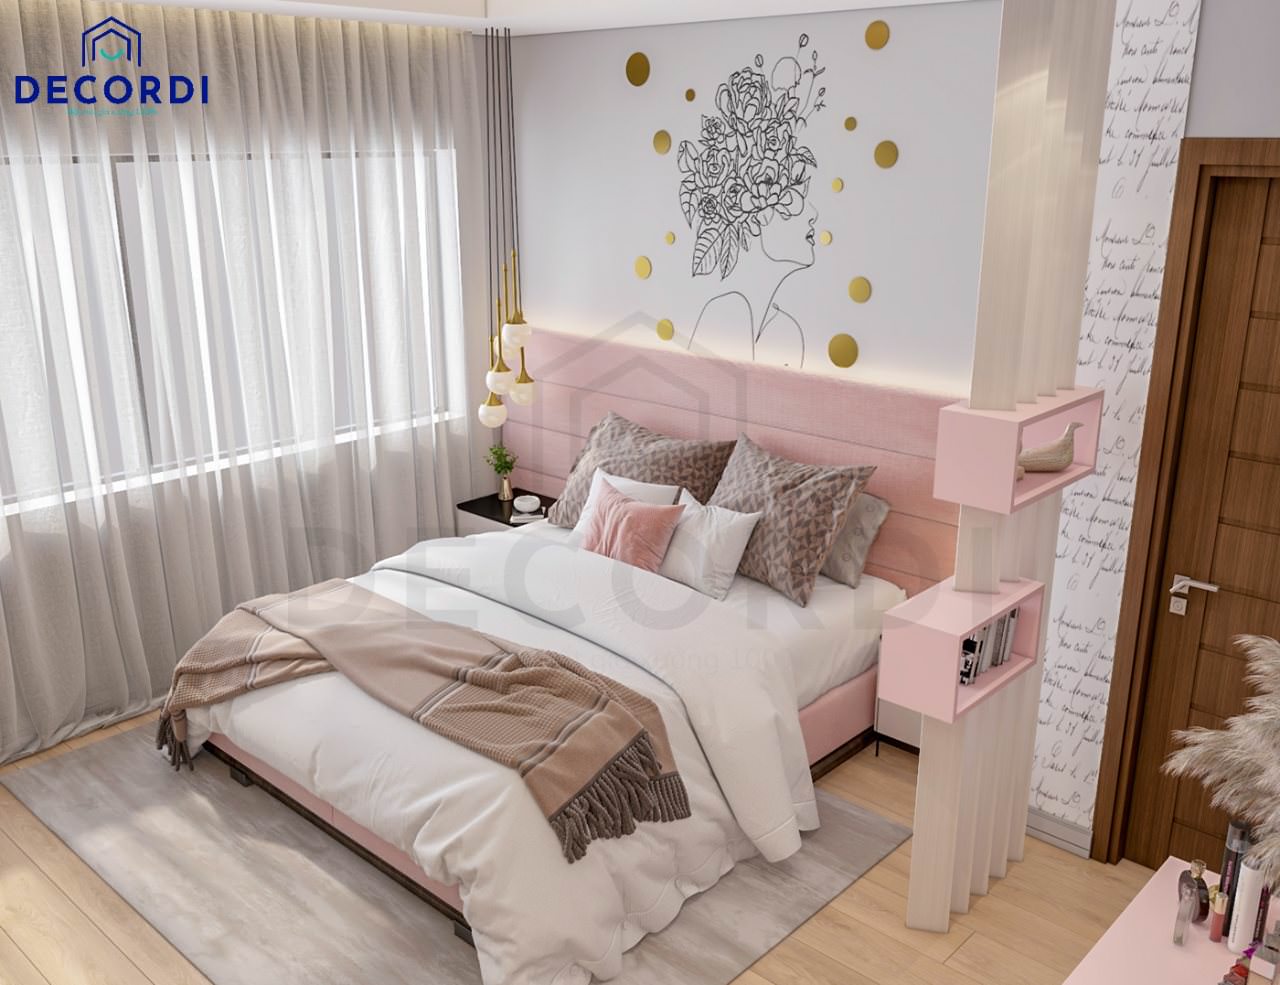 Mẫu trang trí decor phòng ngủ nhỏ gọn màu hồng phối trắng tiện nghi dành cho những cô nàng mệnh Hoả